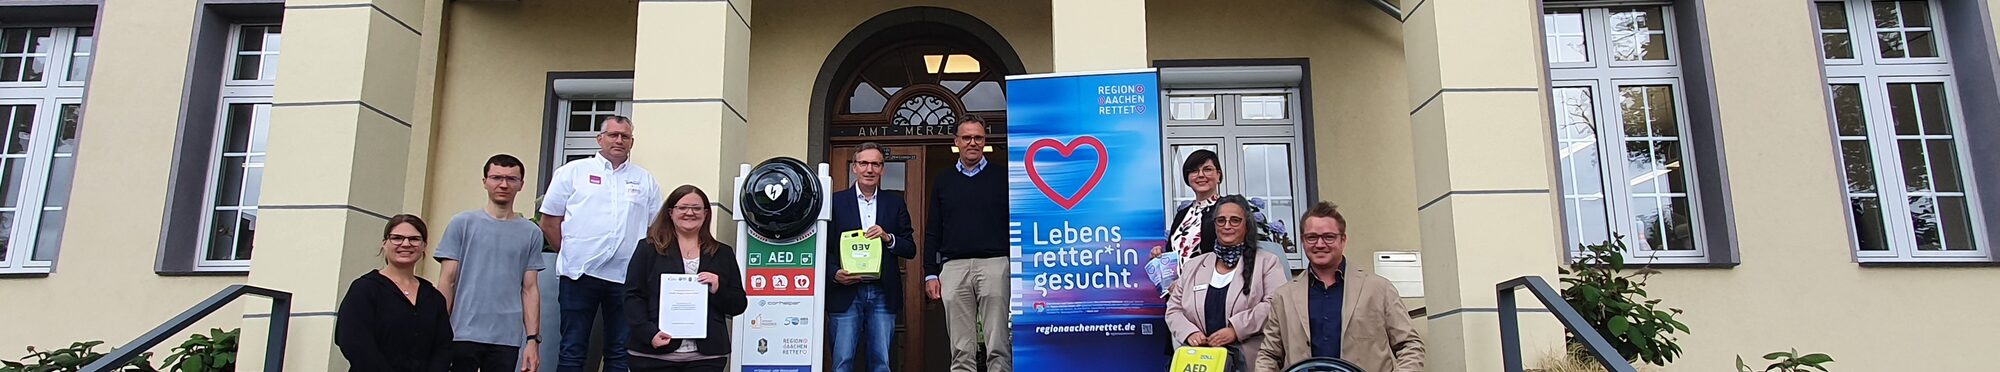 Eine Gruppe Menschen vor dem Rathaus Merzenich. Sie präsentieren Defibrillatoren.